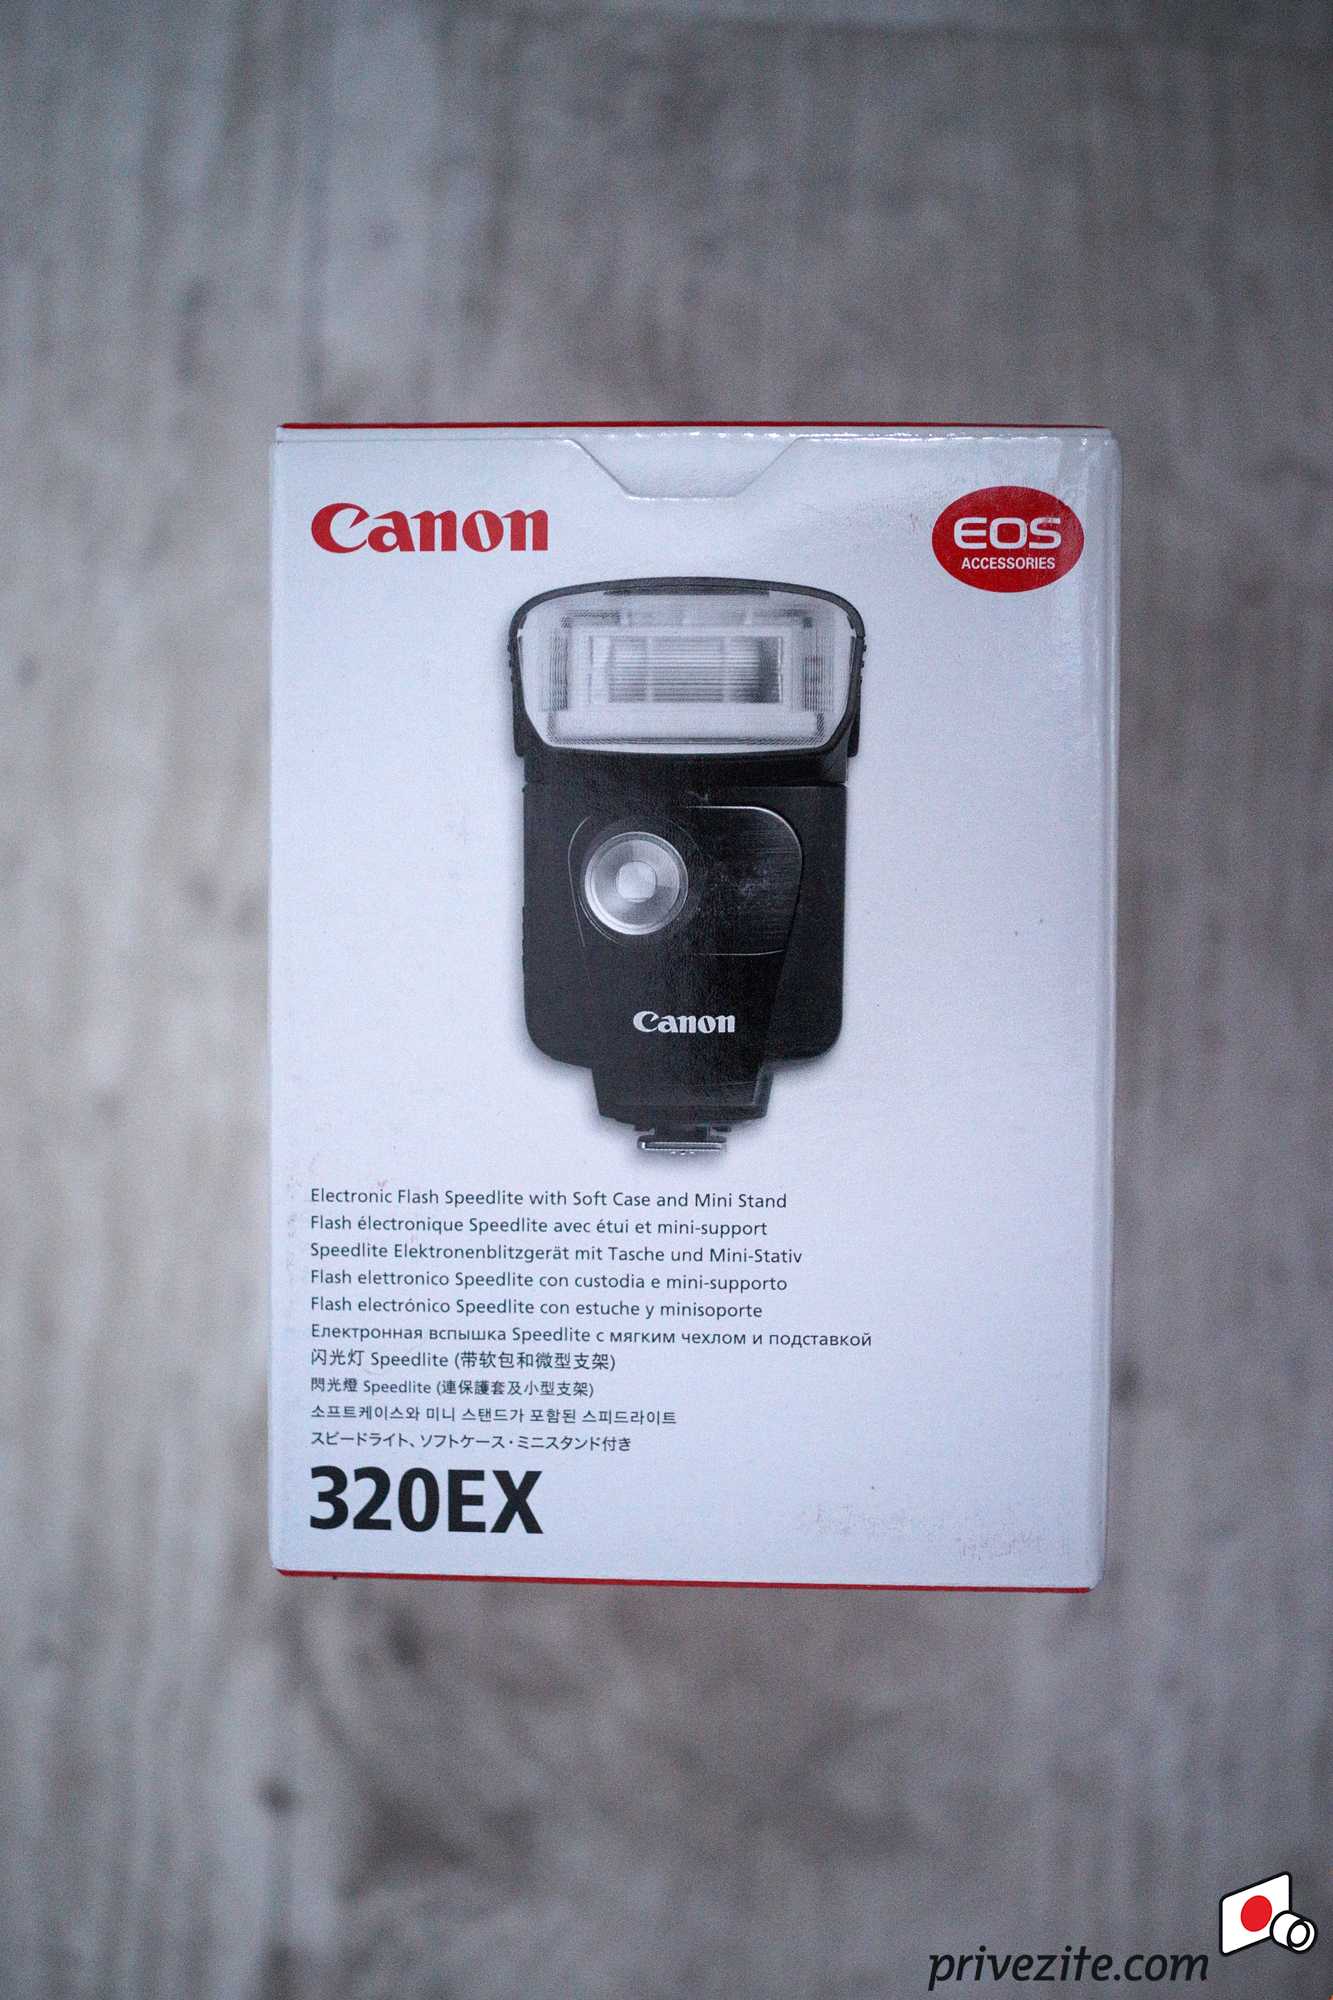 Фотовспышка Canon Speedlite 320EX - подробные характеристики обзоры видео фото Цены в интернет-магазинах где можно купить фотовспышку Canon Speedlite 320EX